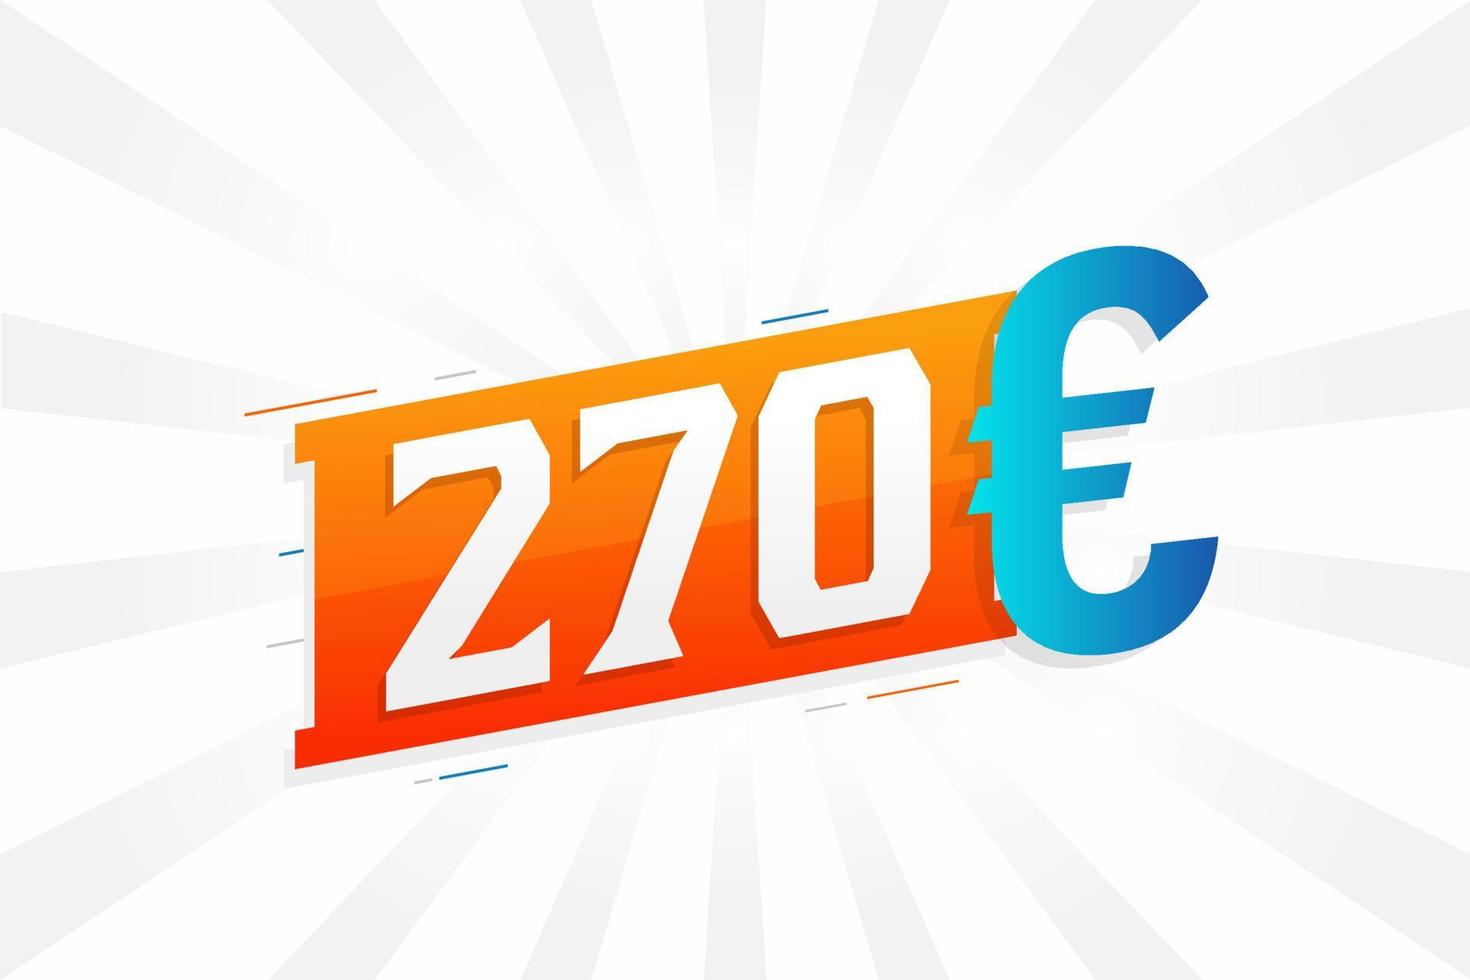 270 Euro Currency vector text symbol. 270 Euro European Union Money stock vector